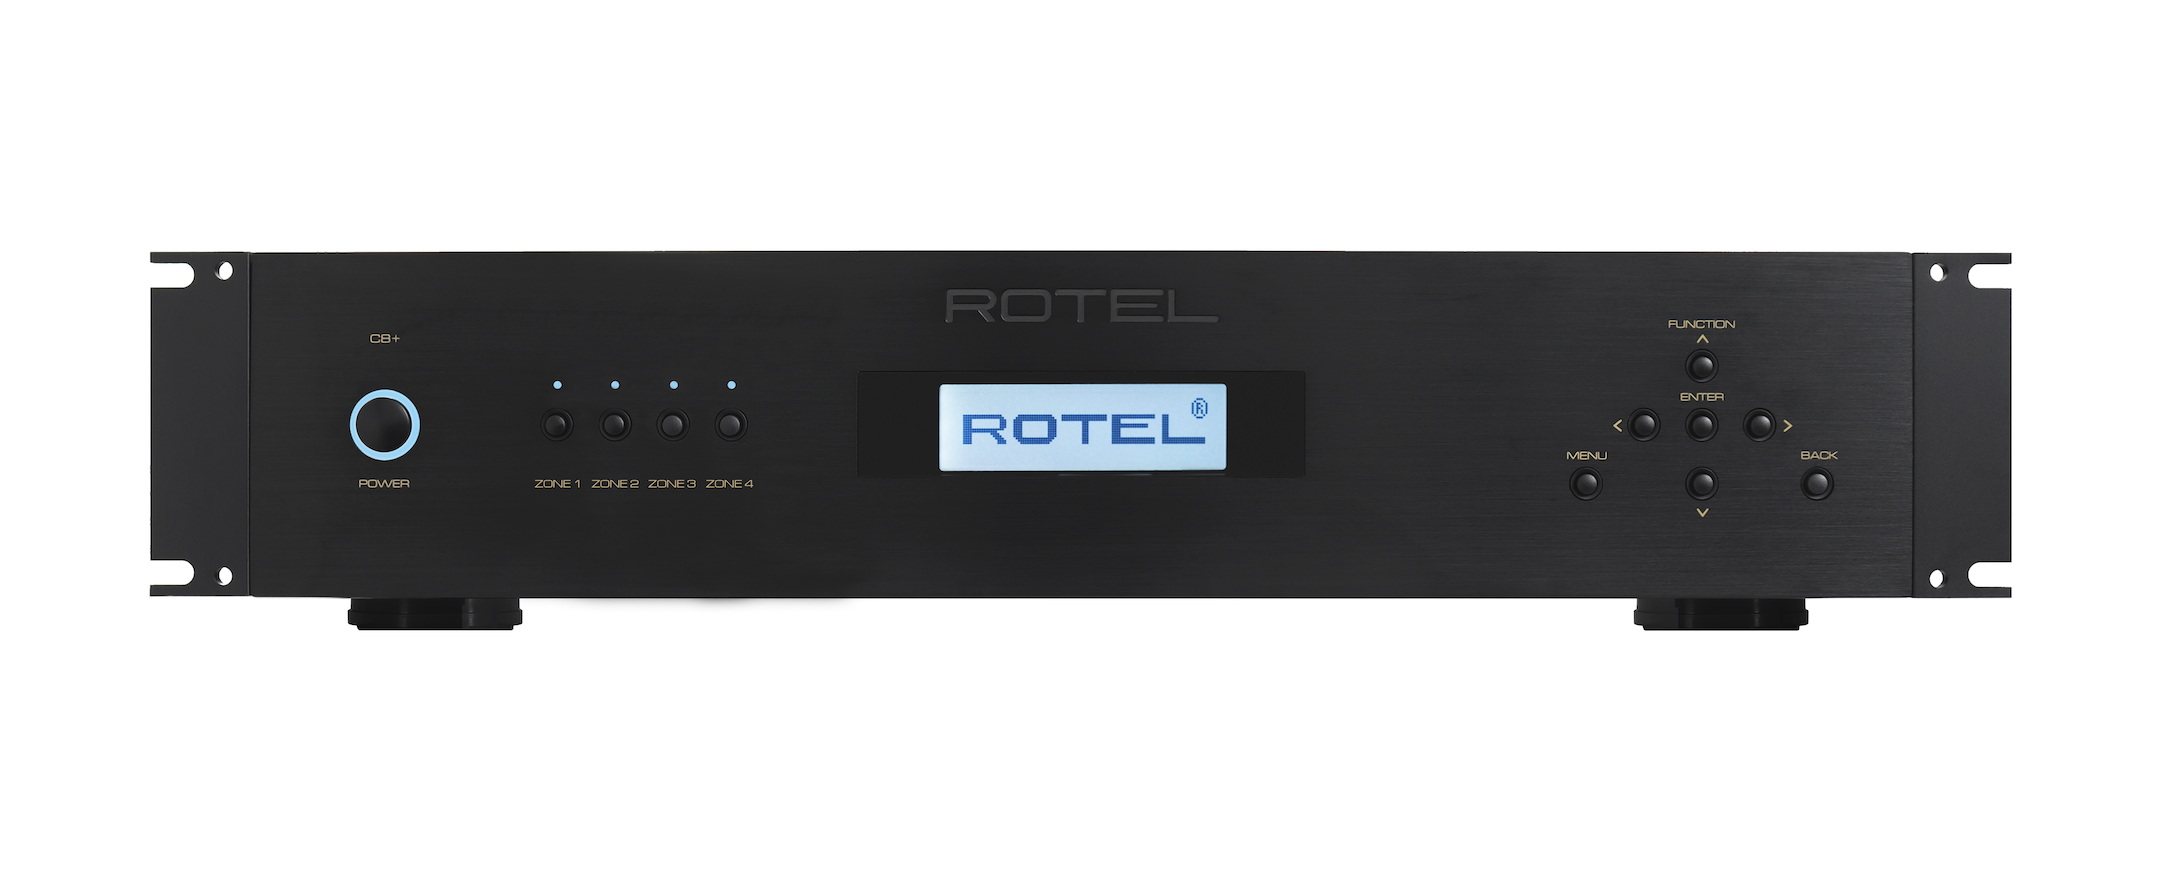 Rotel, C8+, Amplificador 8 Canales Custom Installation